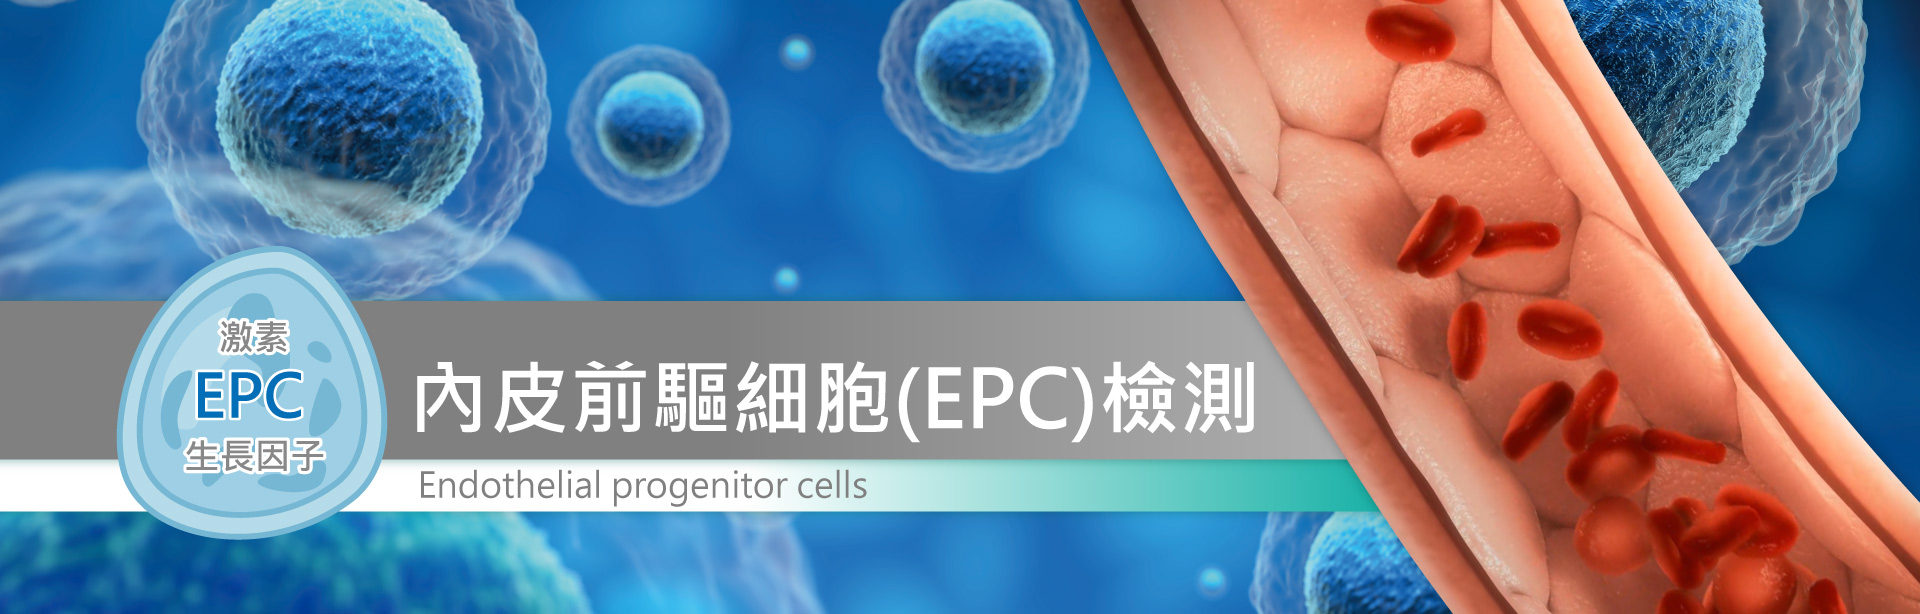 banner-內皮前驅細胞(EPC)檢測形象廣告